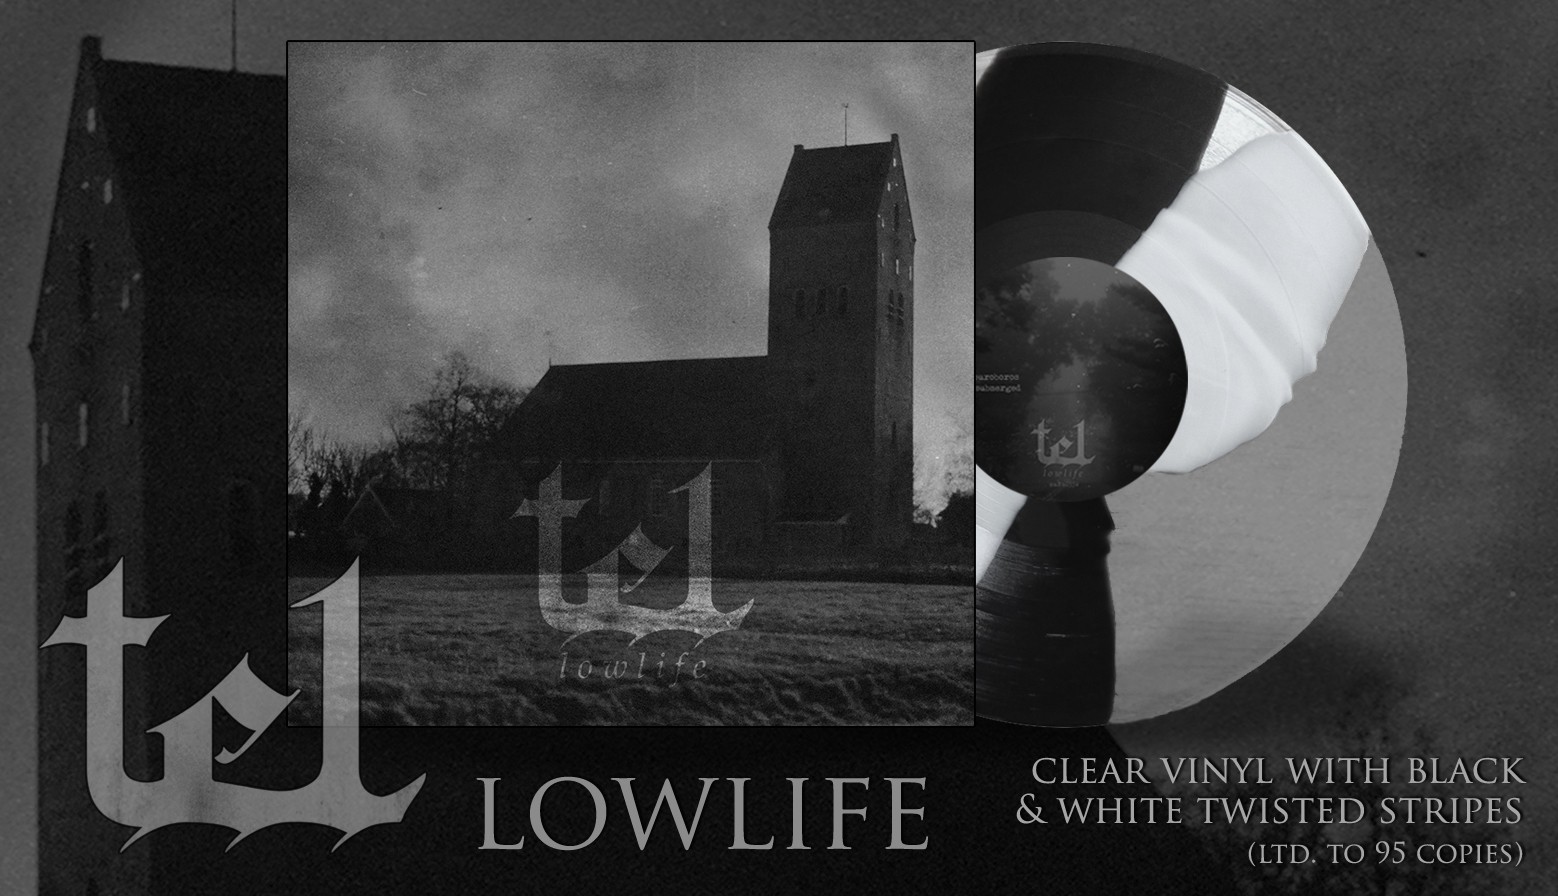 TEL "Lowlife" LP